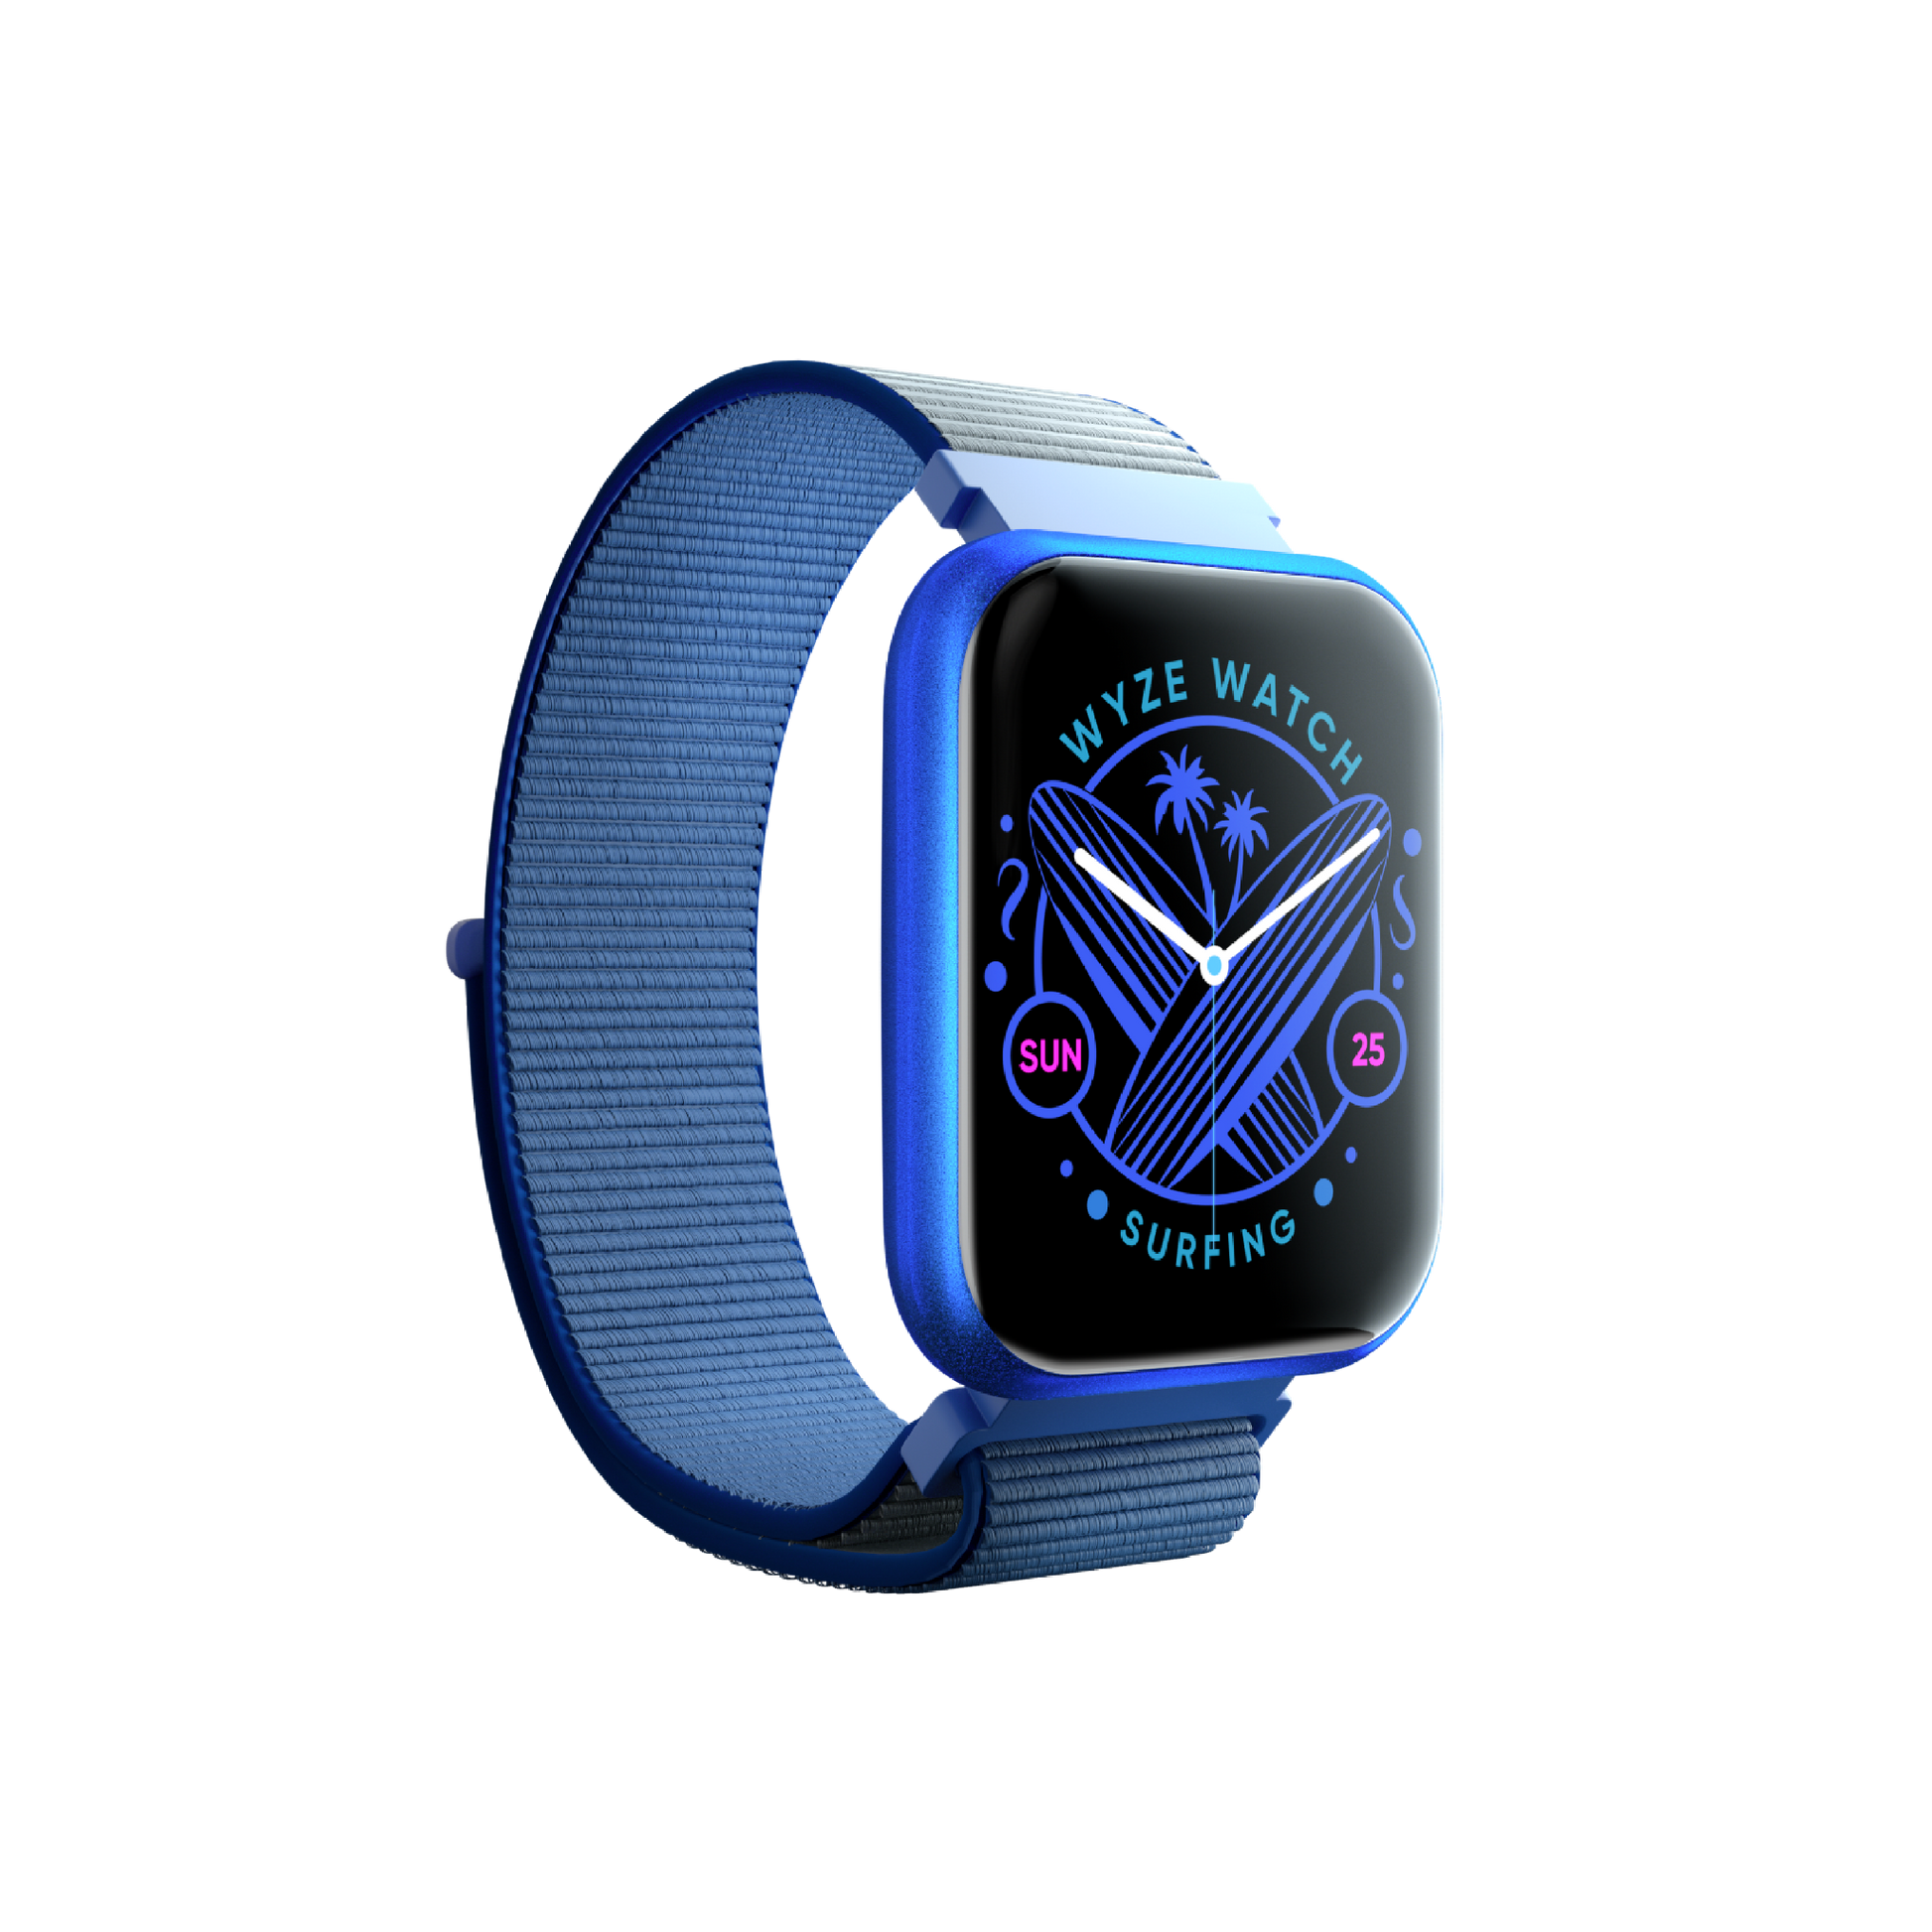 Dark Blue Wyze Watch 47c. Shows dark blue watch band and smart digital interface.